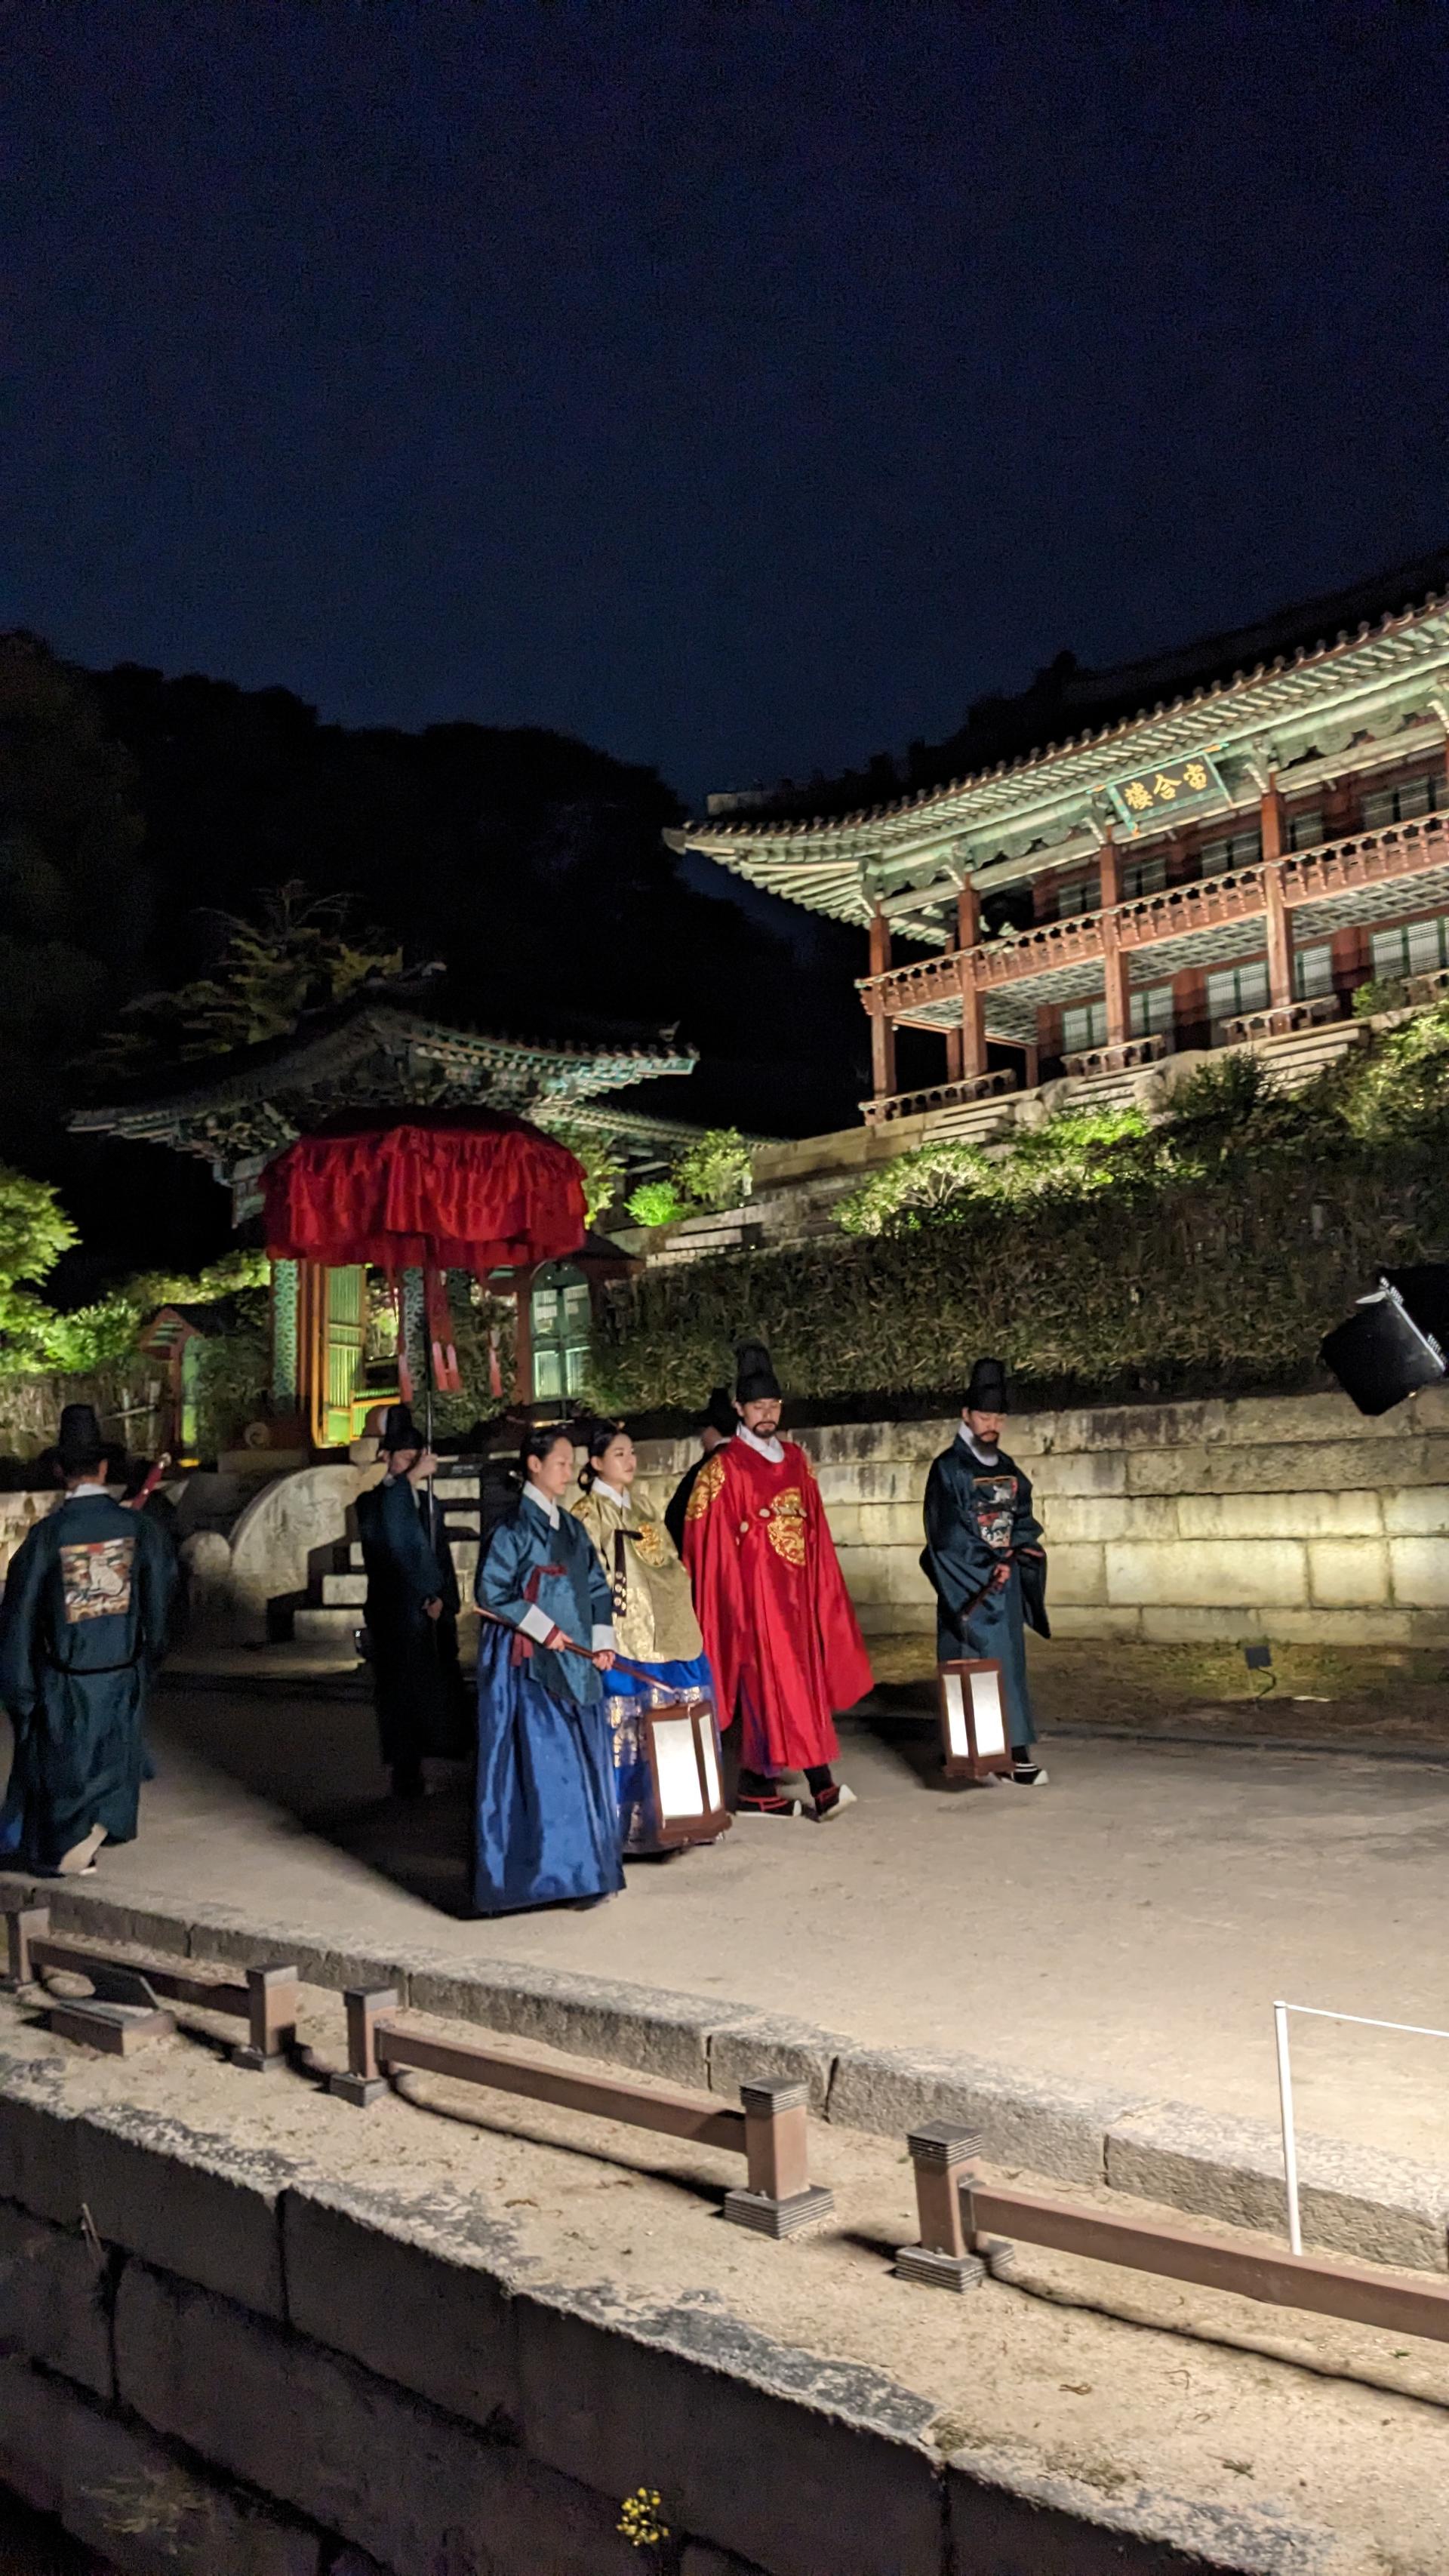 Tham gia Tour Ánh trăng cung điện Changdeokgung